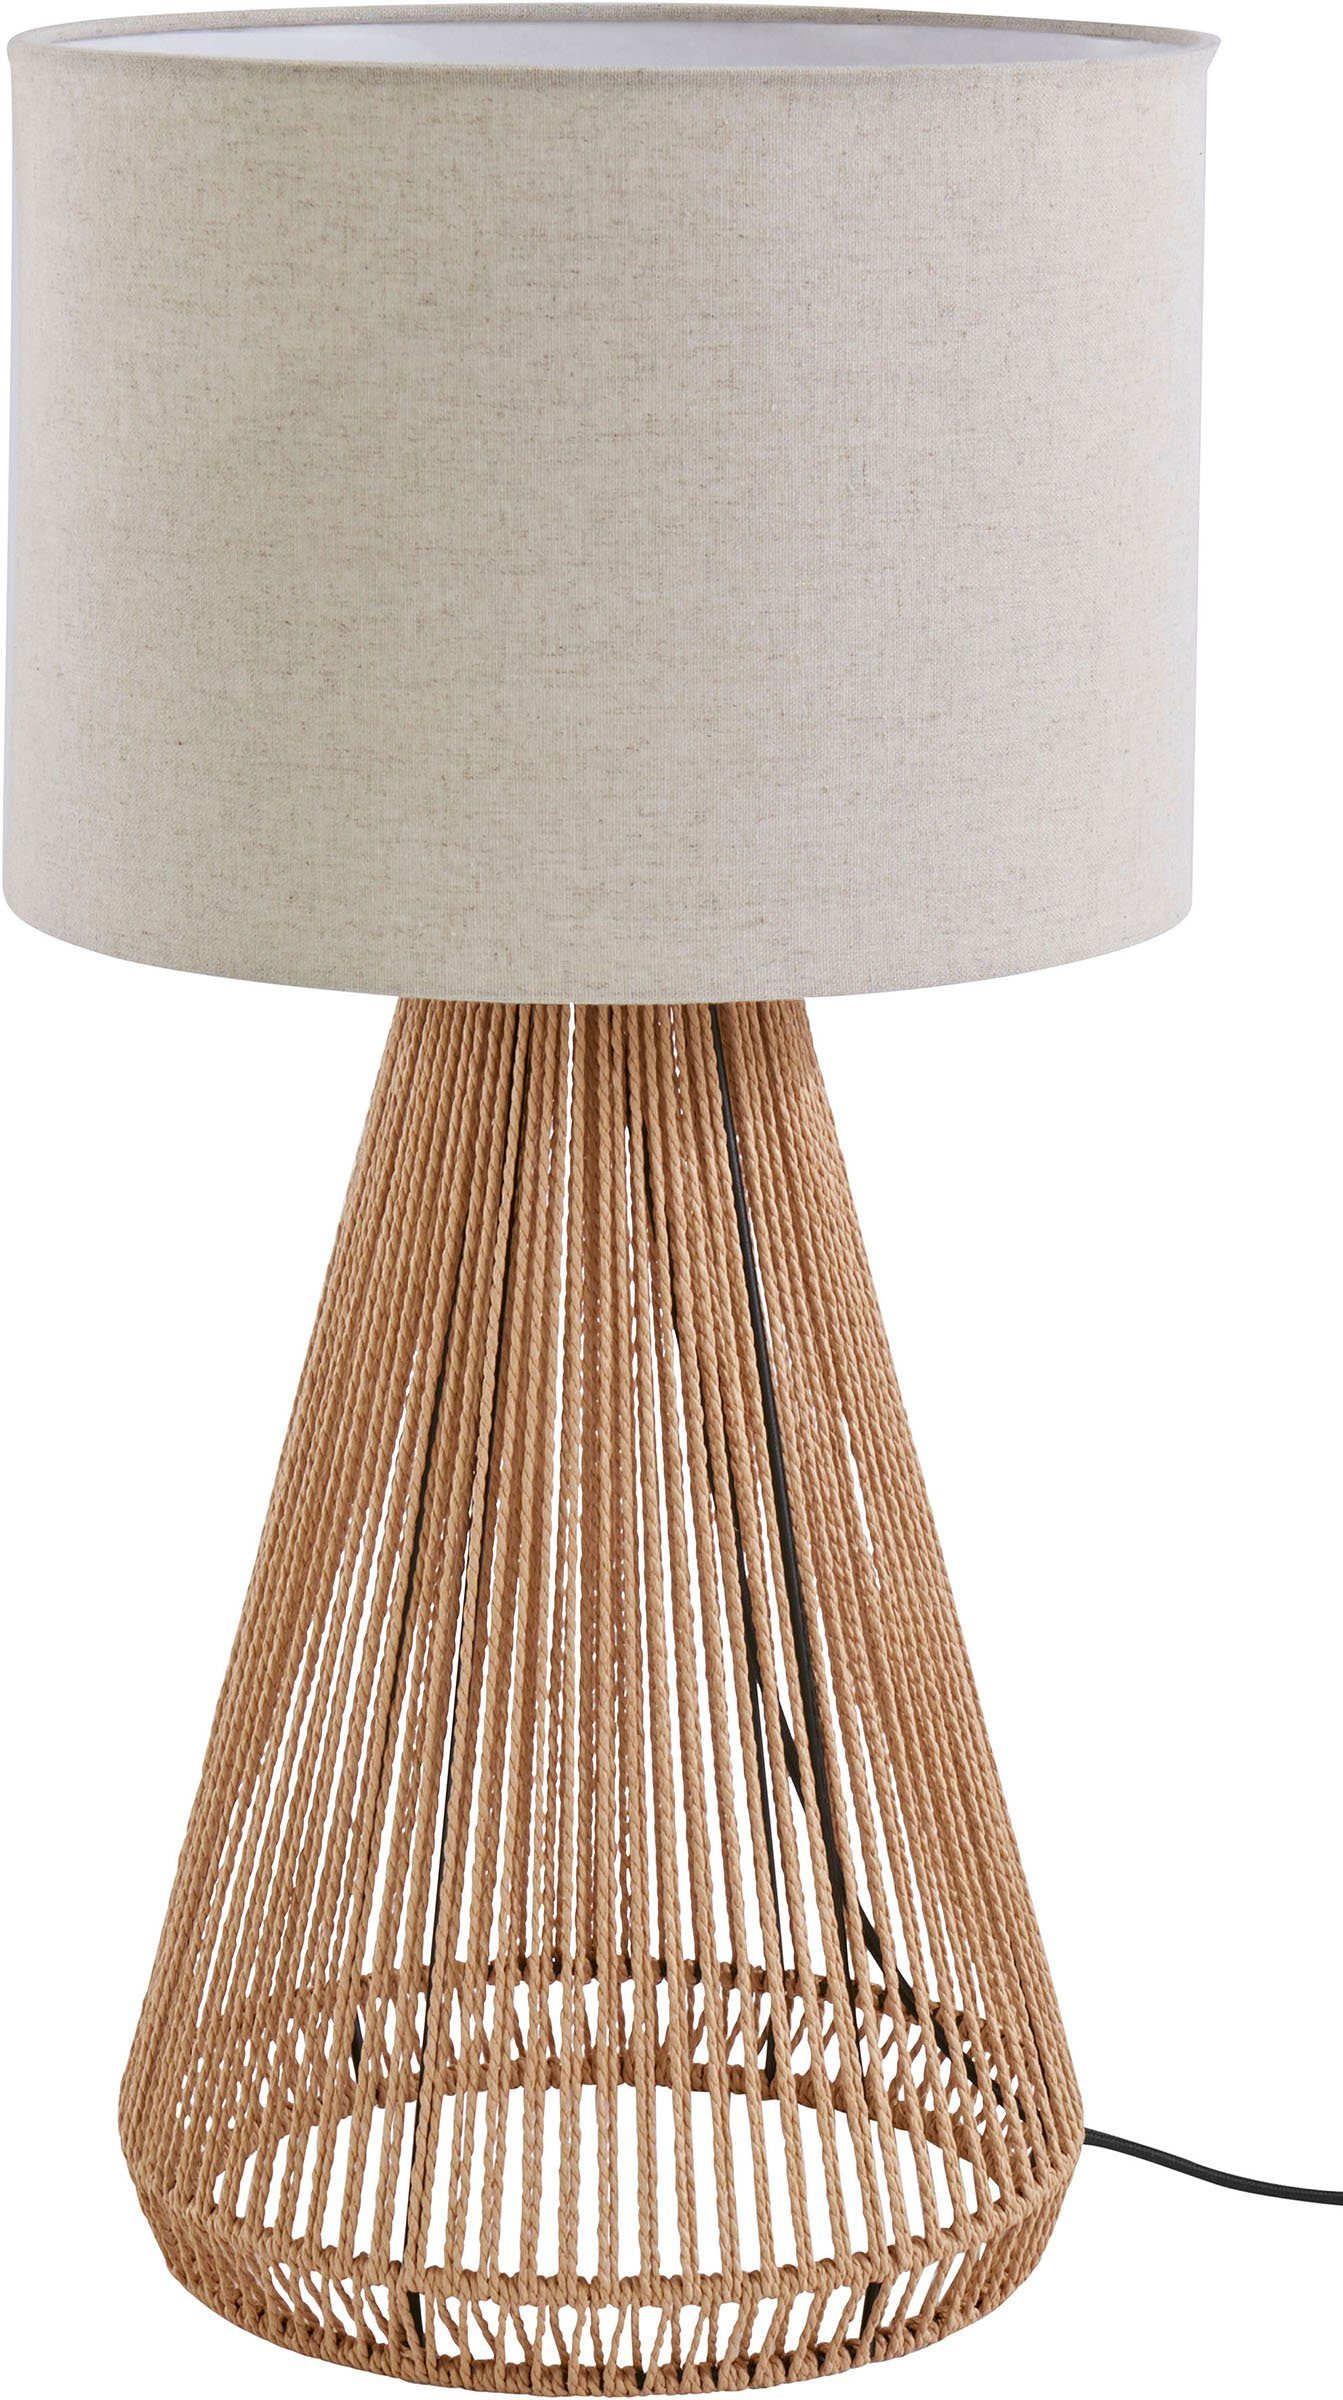 Tischleuchte Tischlampe Keramik Fuß Schirm braun beige 45cm Wohnzimmer Lampe 